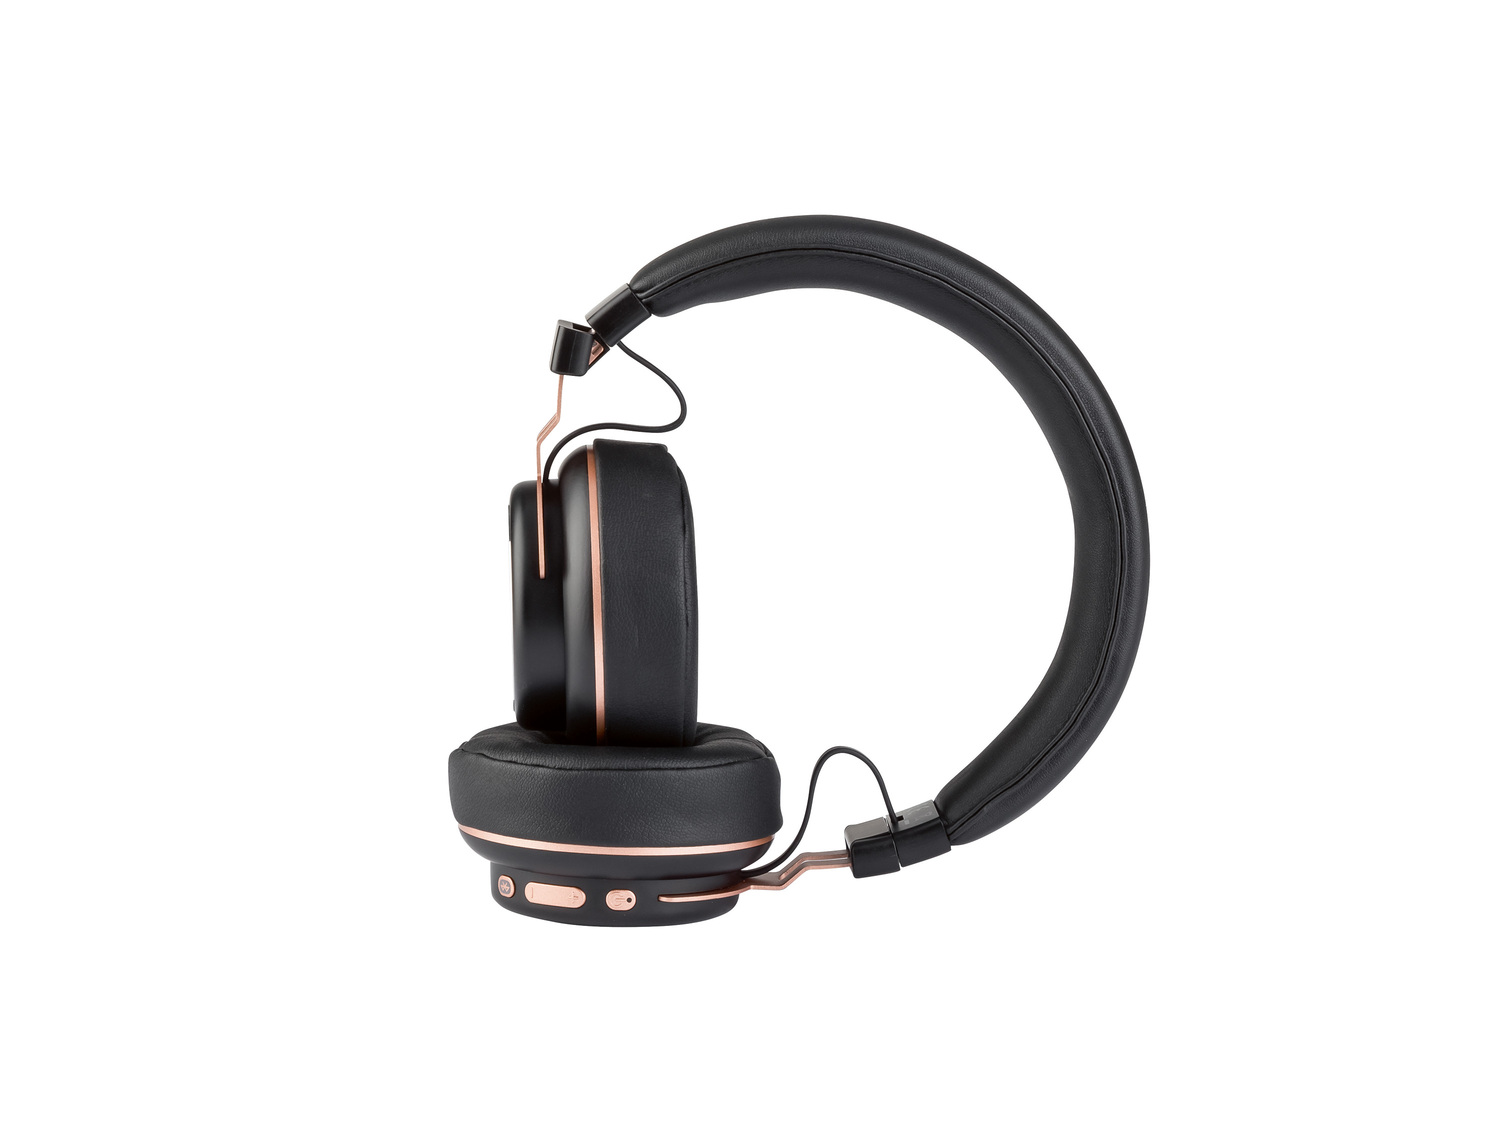 Słuchawki nauszne bezprzewodowe z Bluetooth® , cena 79,00 PLN 
różne wzory
Opis

- ...